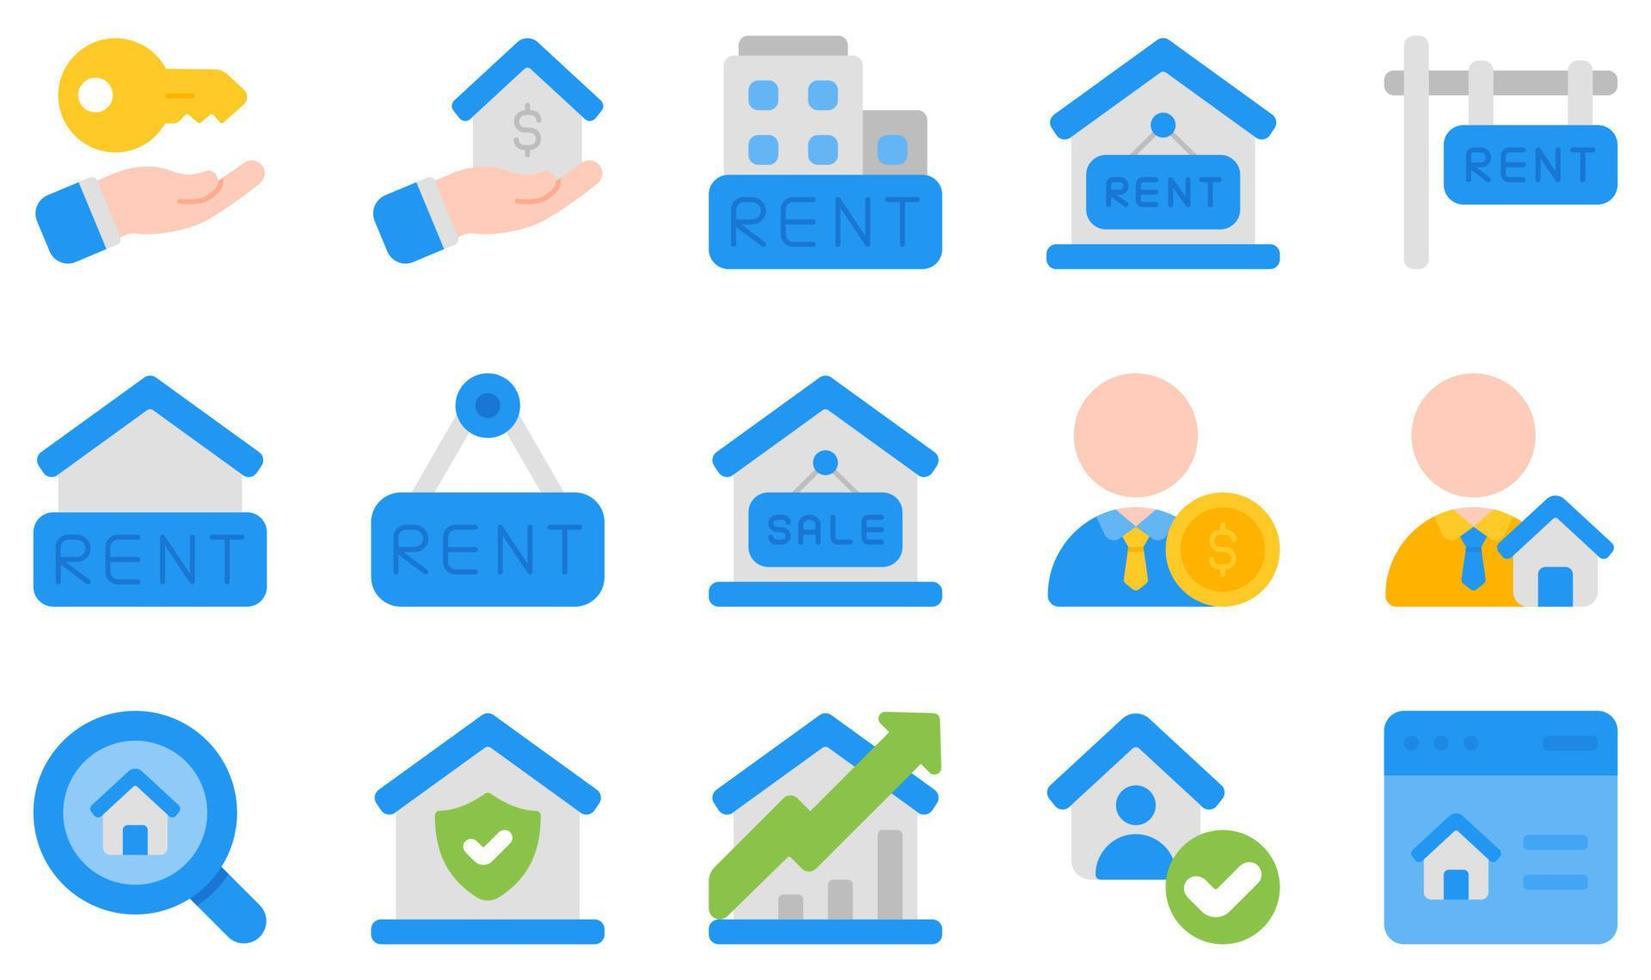 ensemble d'icônes vectorielles liées à la propriété locative. contient des icônes telles que propriétaire, immobilier, location, vente, agent commercial, recherche et plus encore. vecteur